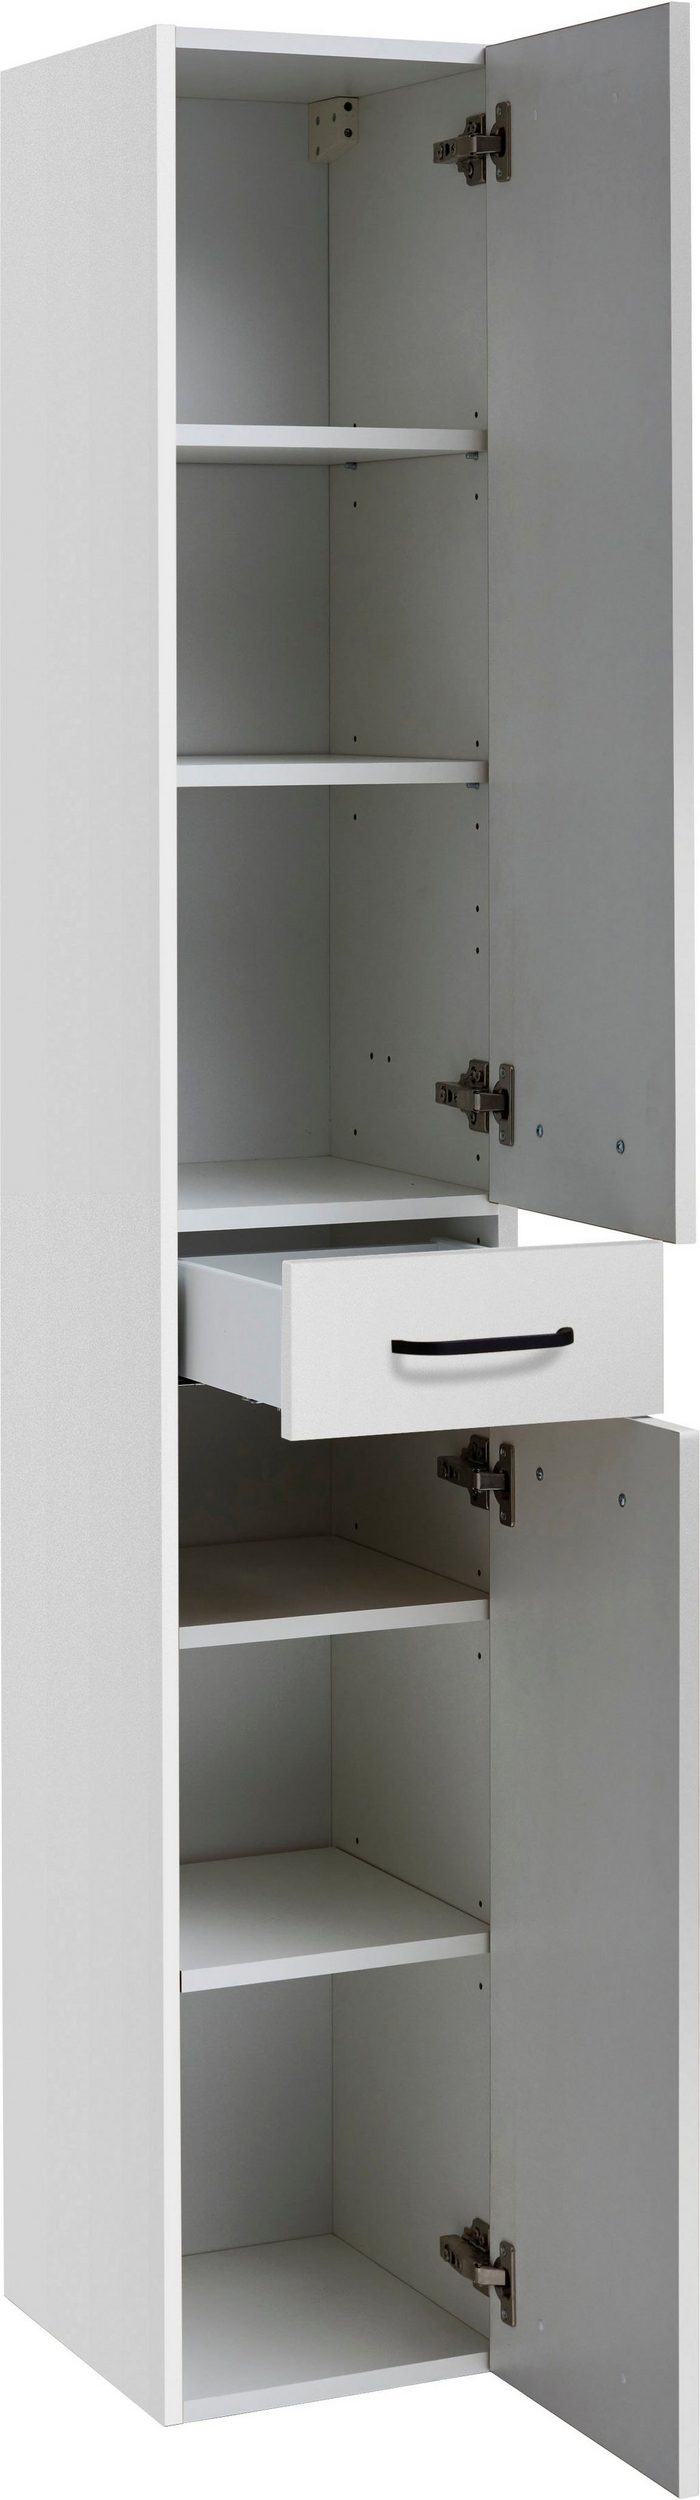 Young Concept Basic fürdőszoba bútor HTST30 fiókos magas szekrény